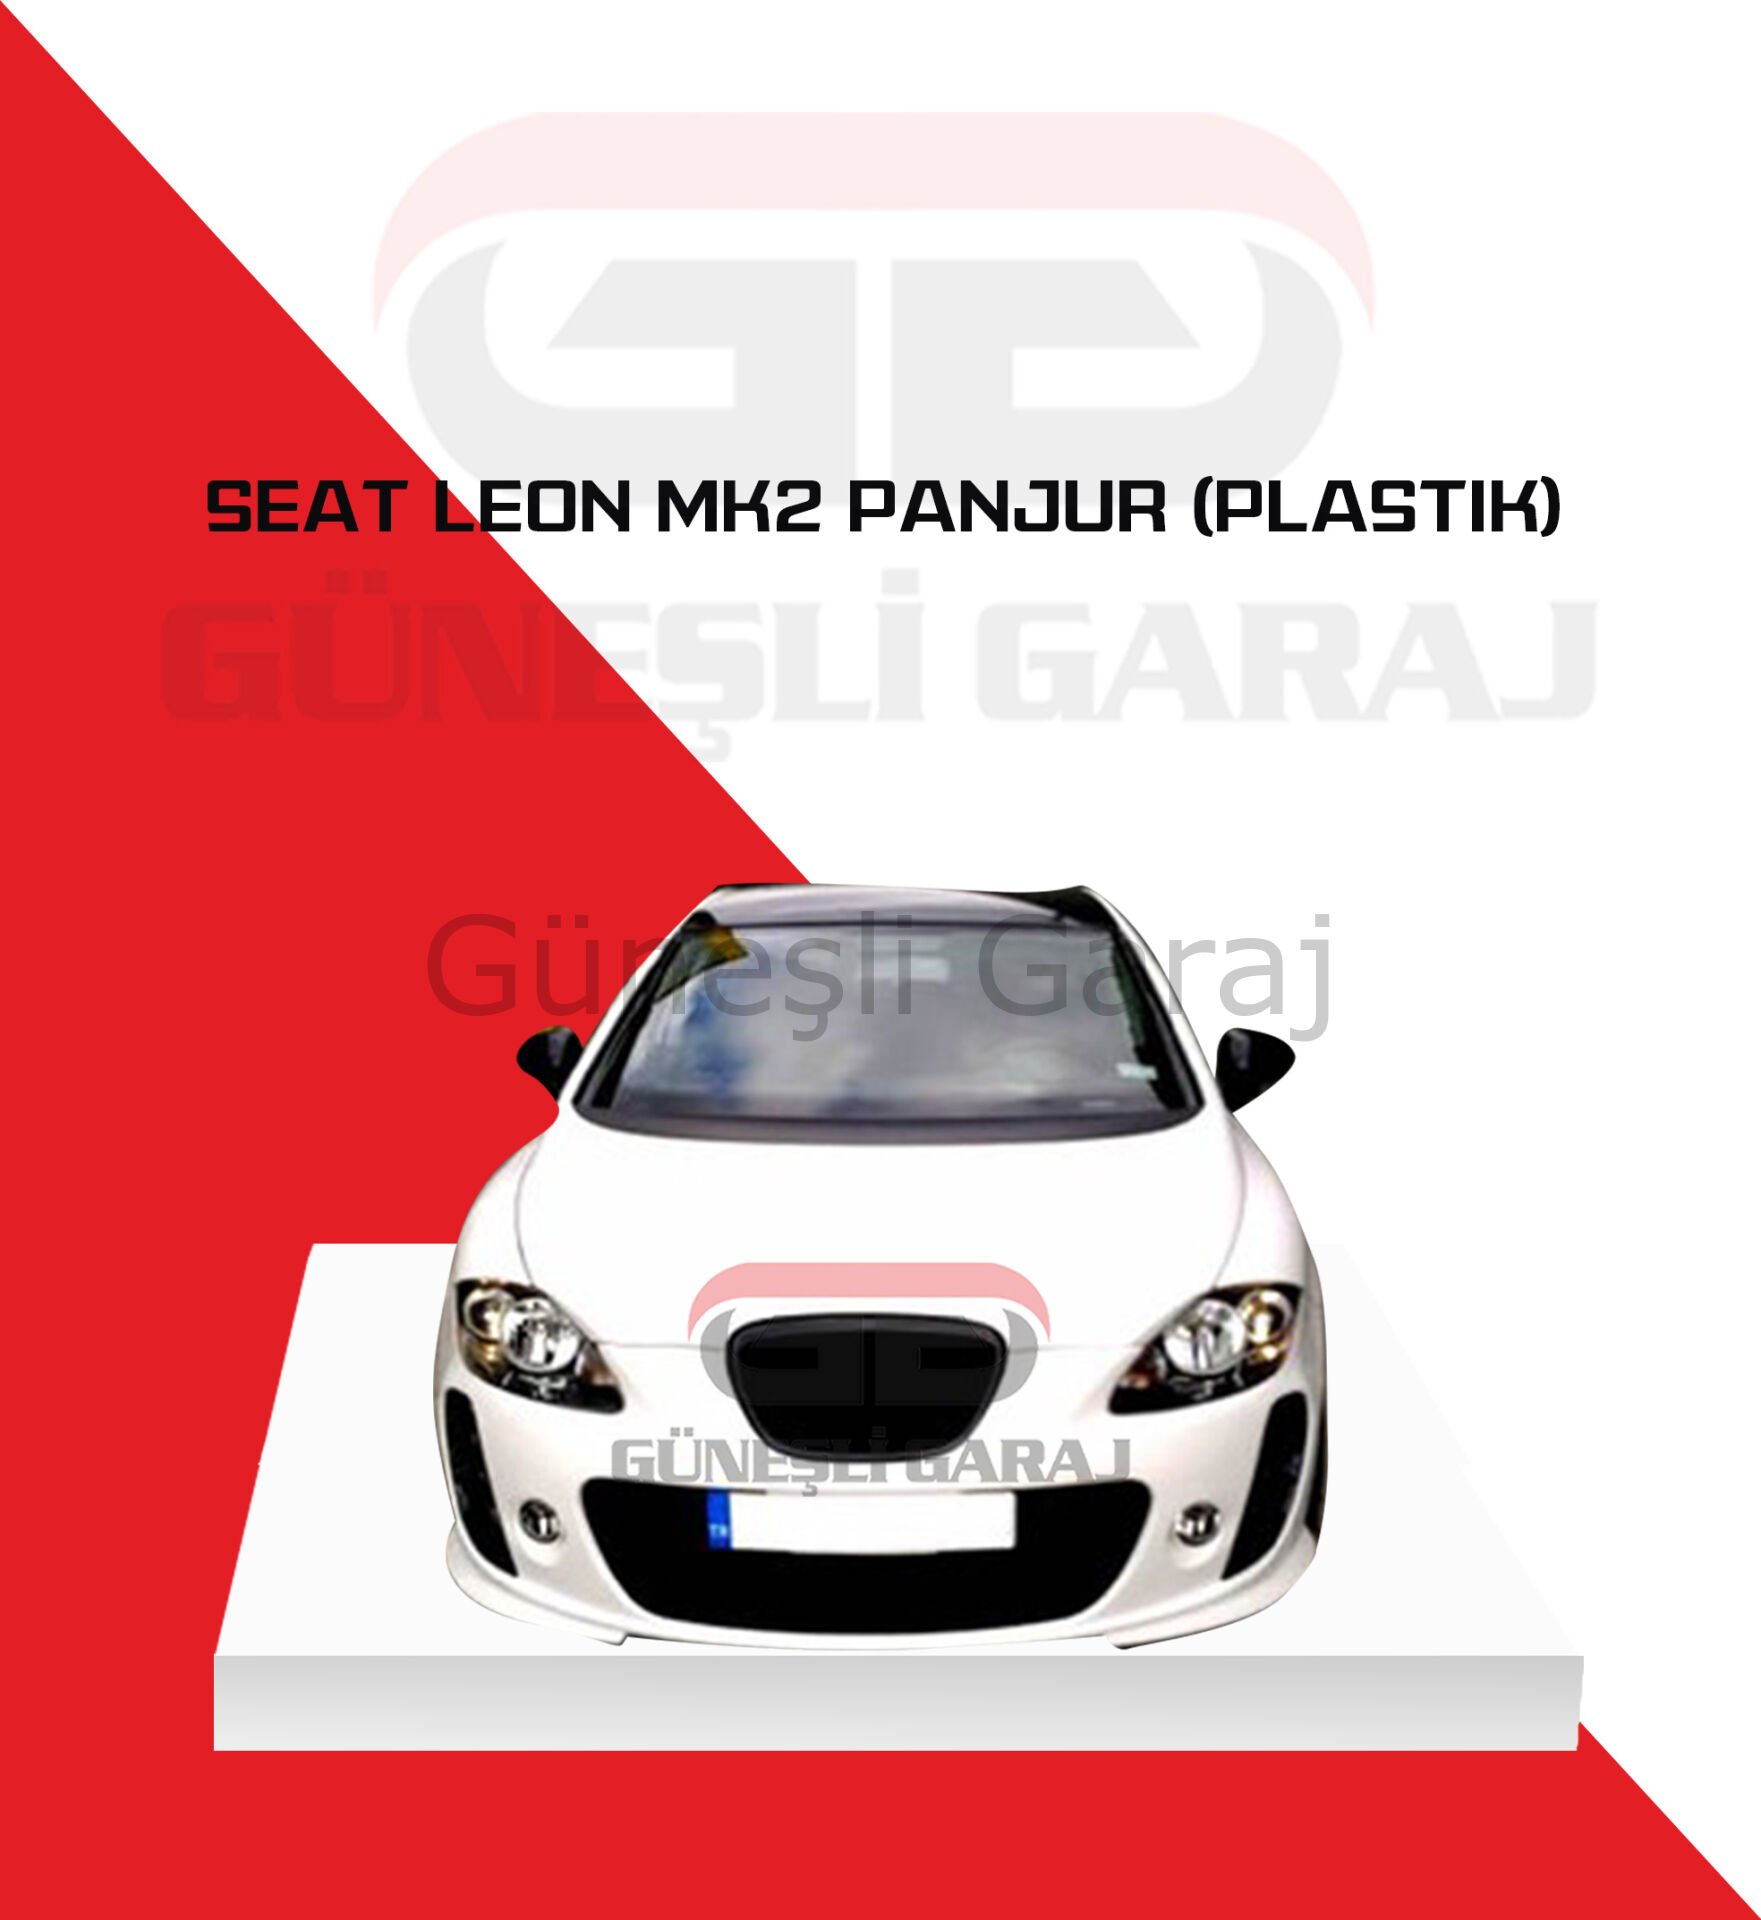 Seat Leon Mk2 Panjur (Plastik)